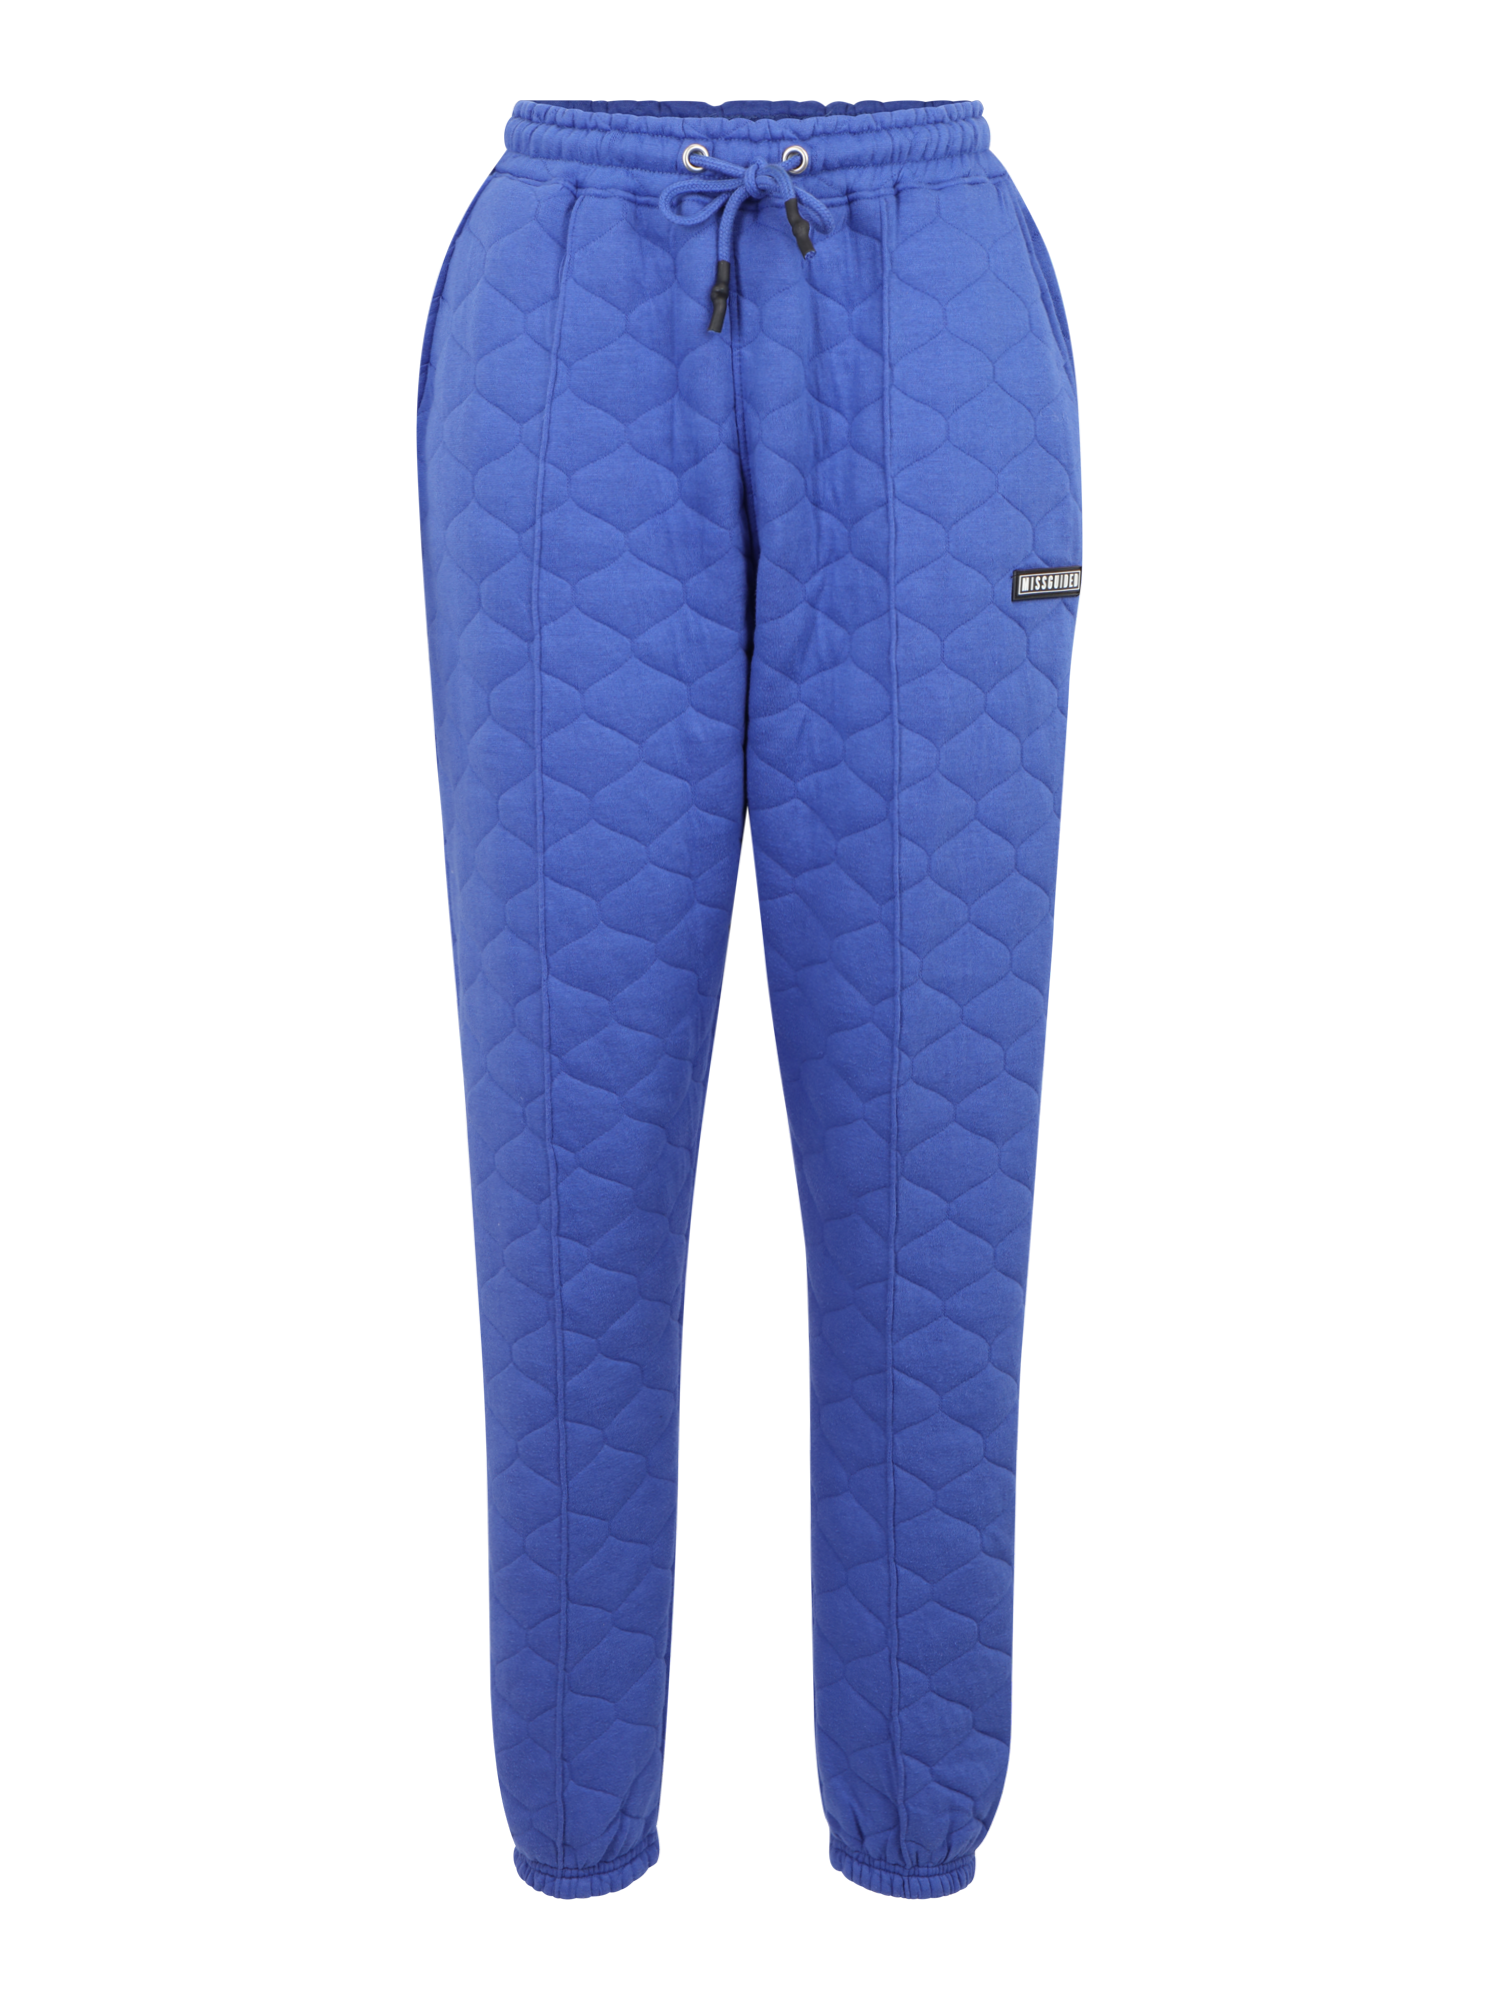 Odzież Kobiety Missguided Spodnie w kolorze Kobalt Niebieskim 